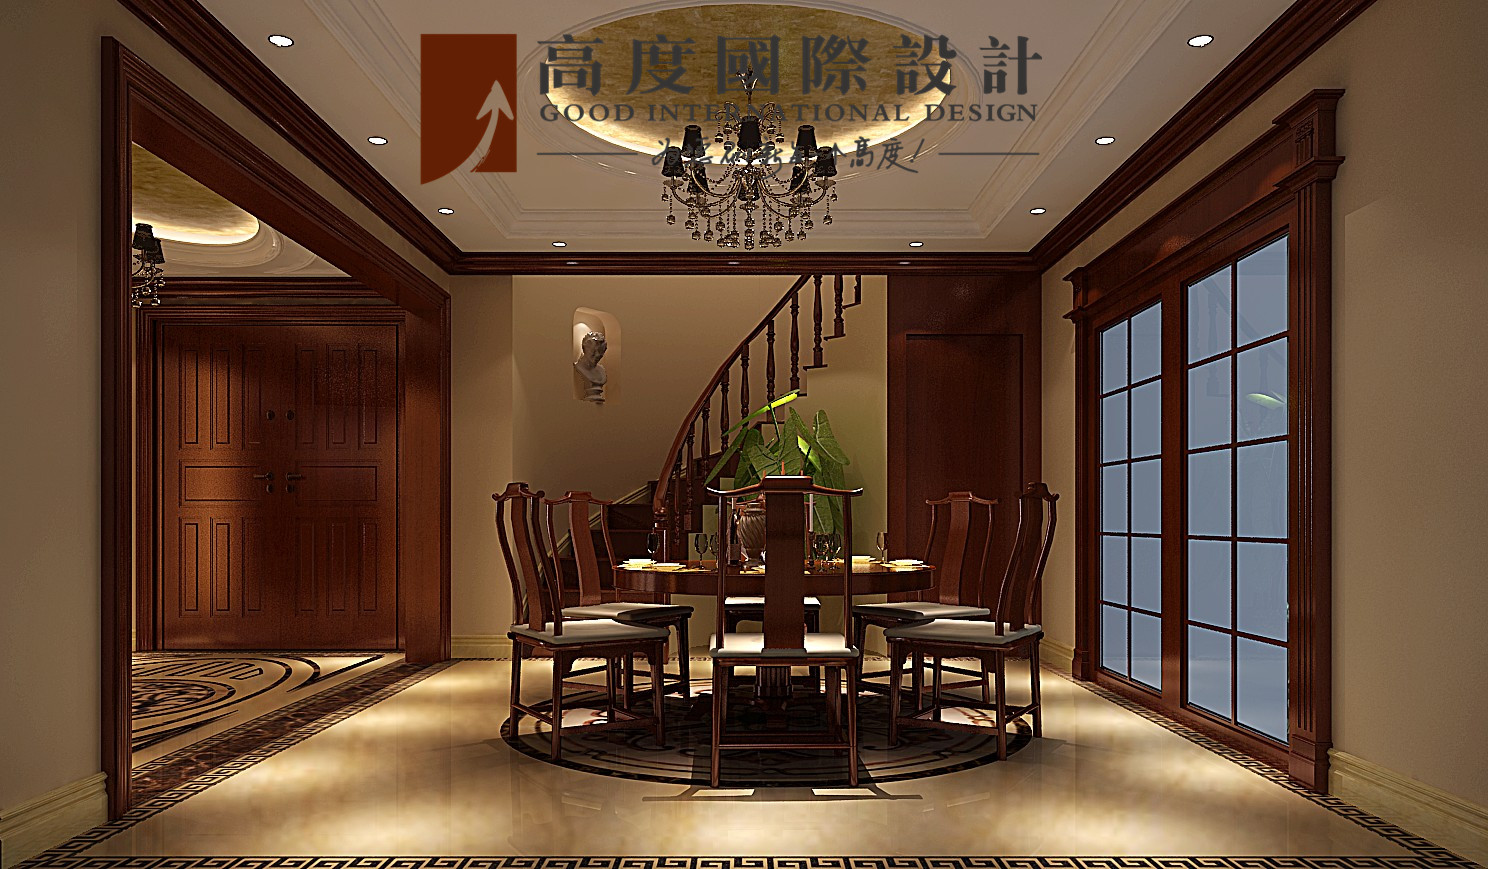 混搭 复古 别墅 餐厅图片来自高度国际设计严振宇在旭辉御府267平米中西混搭复式的分享